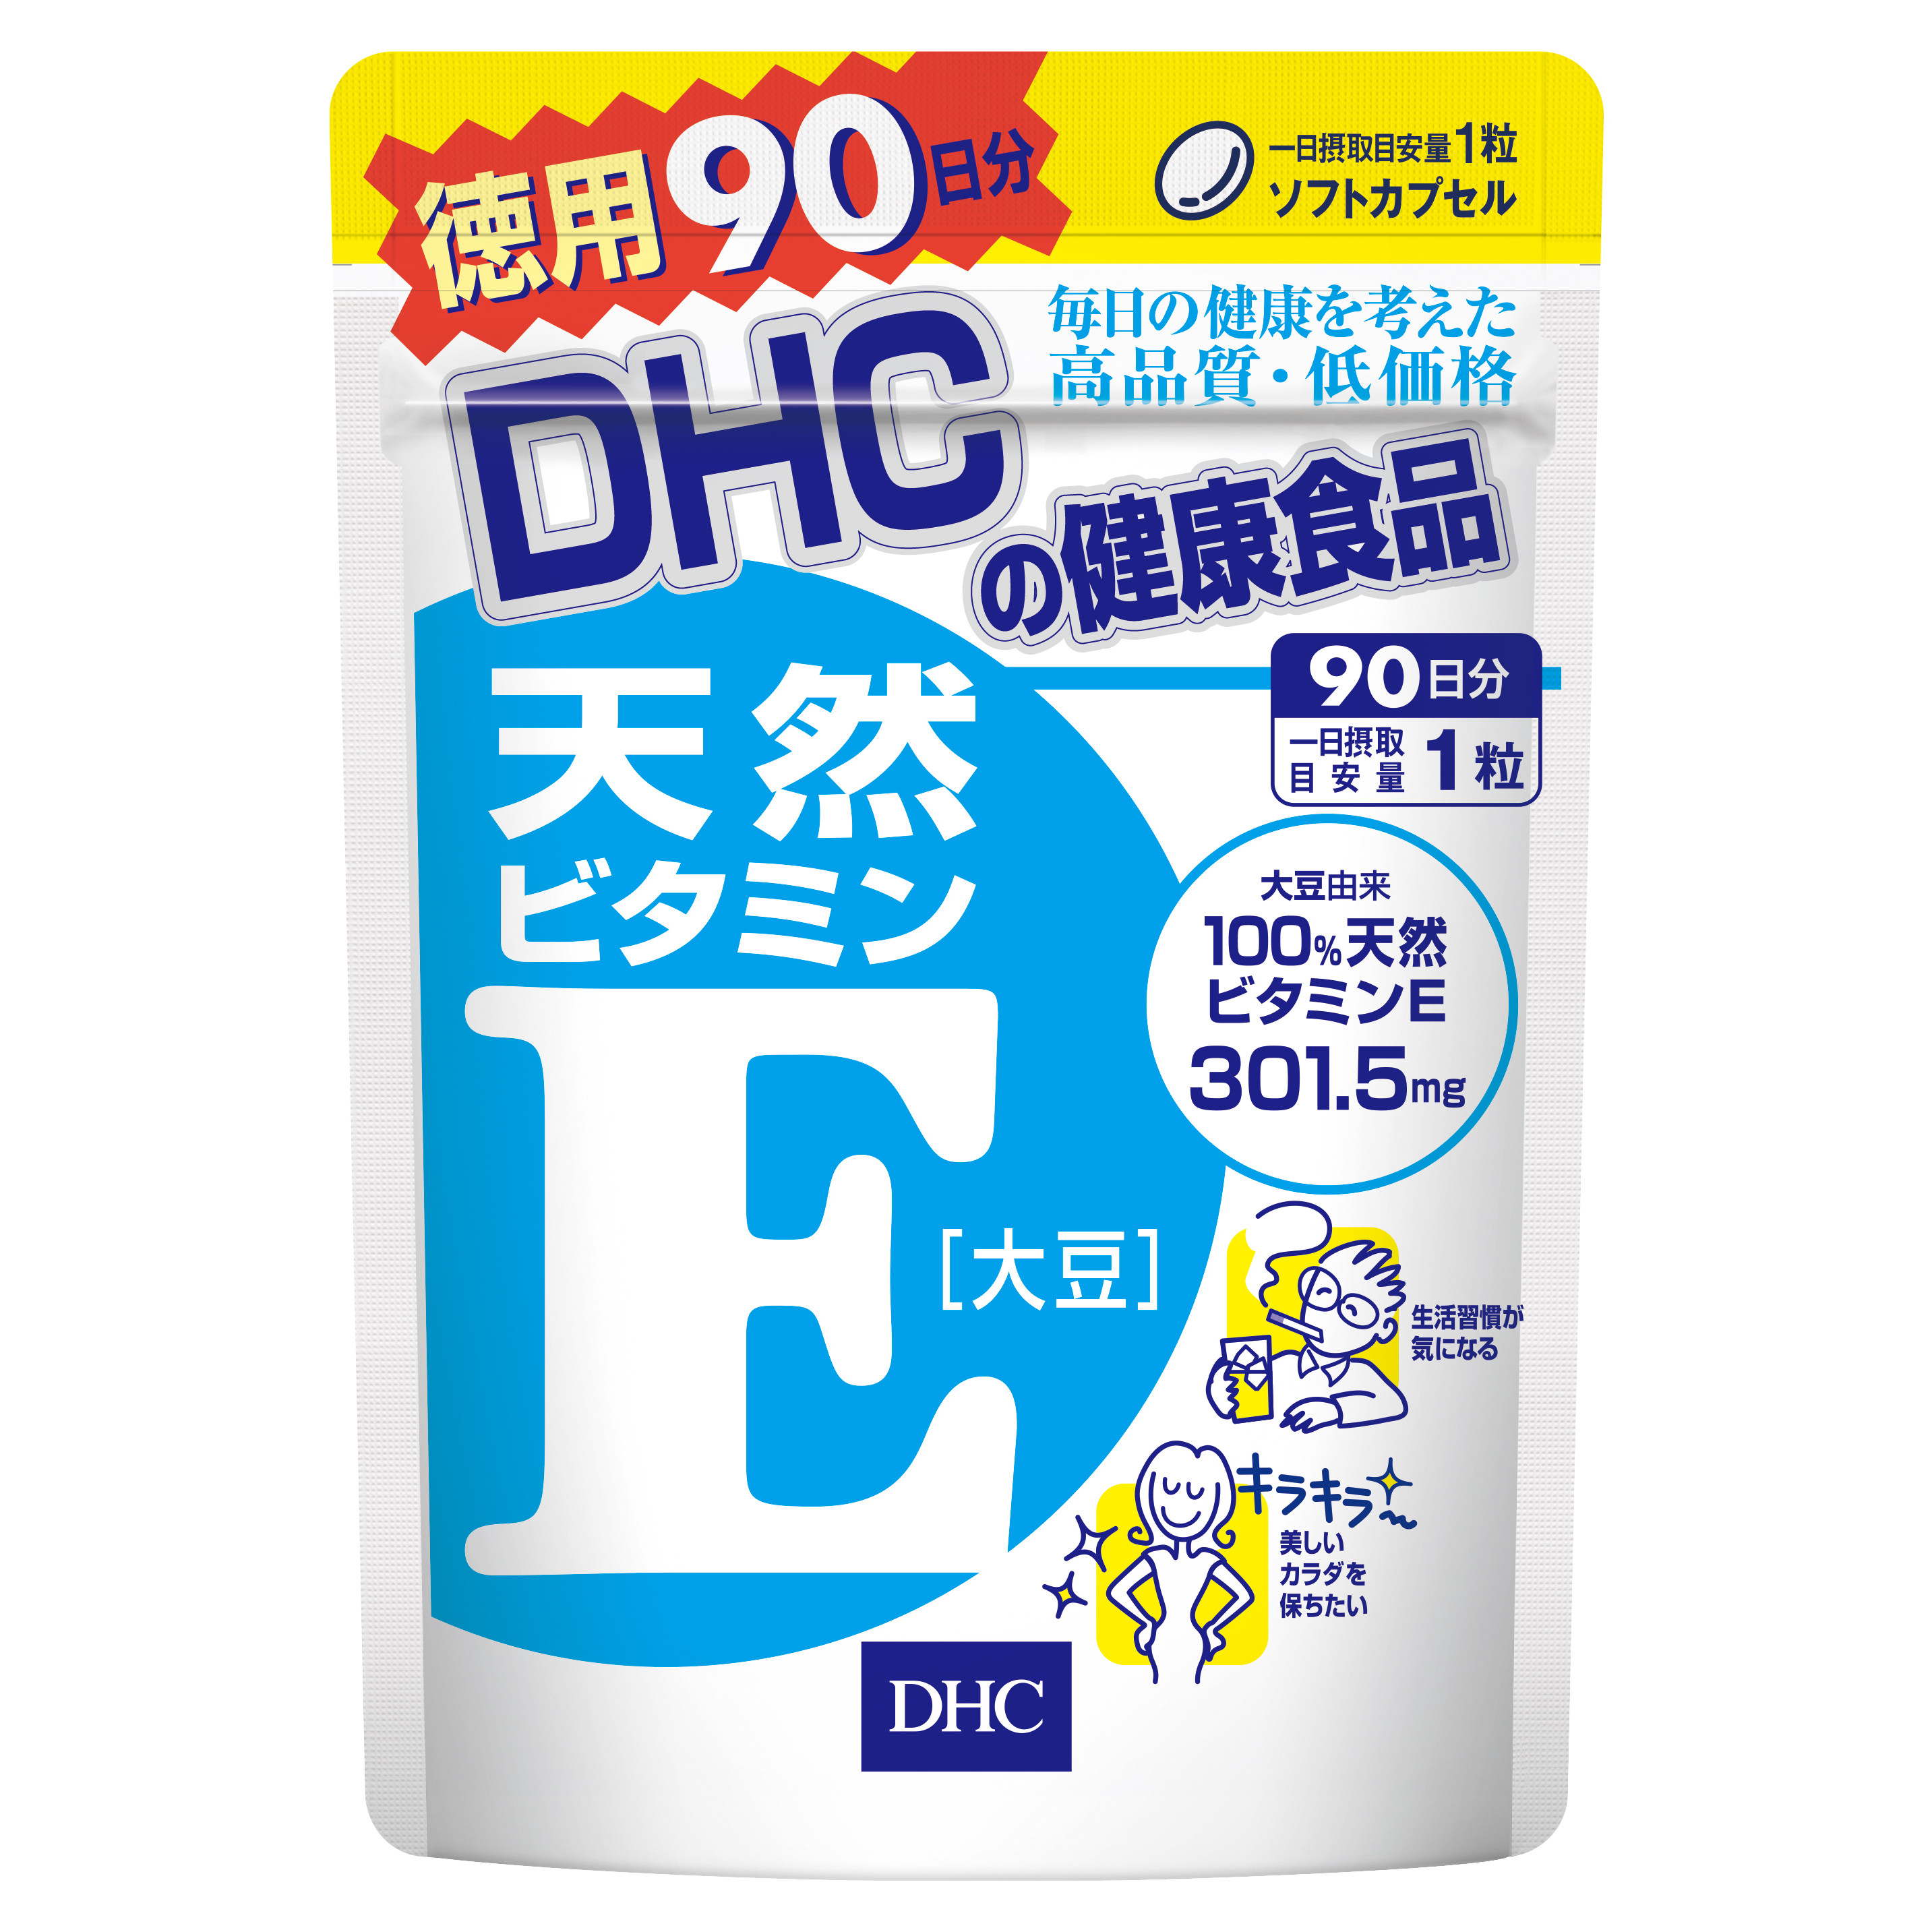 Viên Uống DHC Bổ Sung Vitamin E Nhật Bản 90 Ngày (90 Viên)